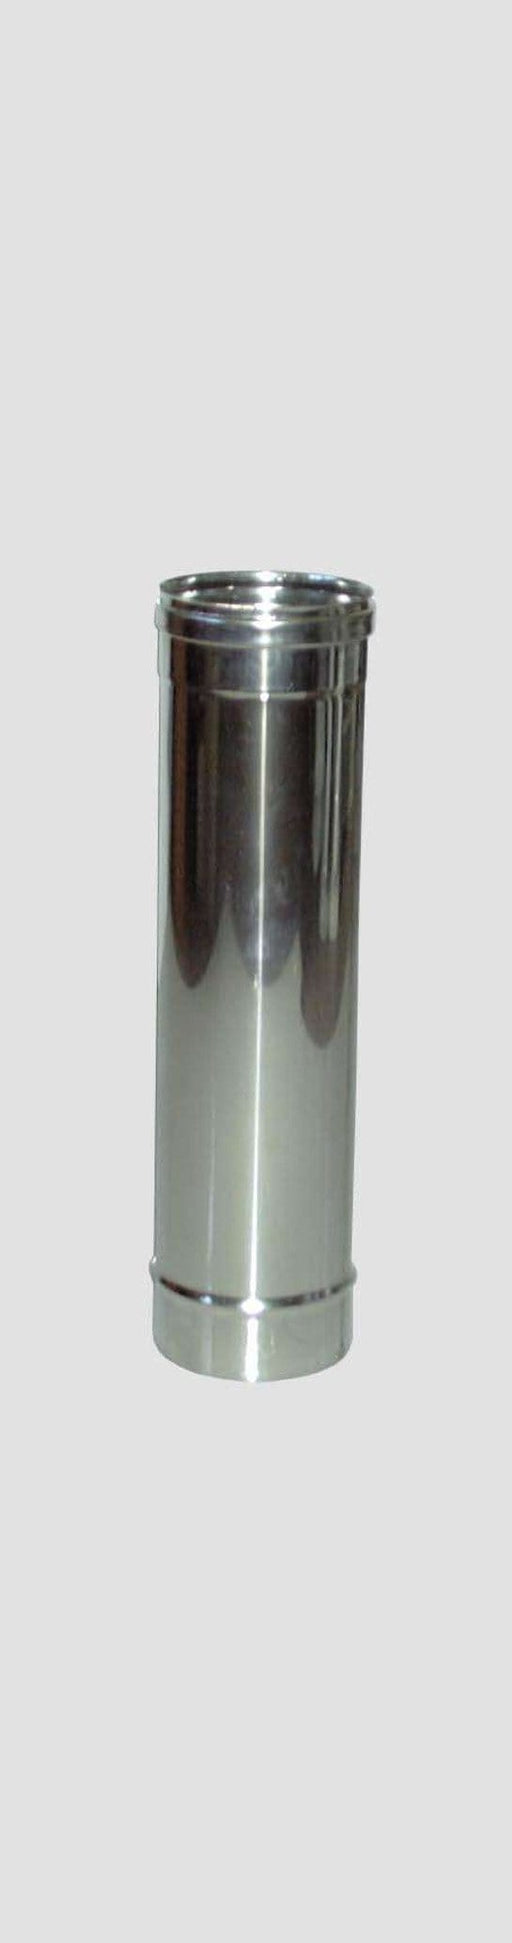 Tubo Diritto Inox AISI 304 per Stufe - Altezza 100 cm - Diametro 13 cm MillStore (2499314)